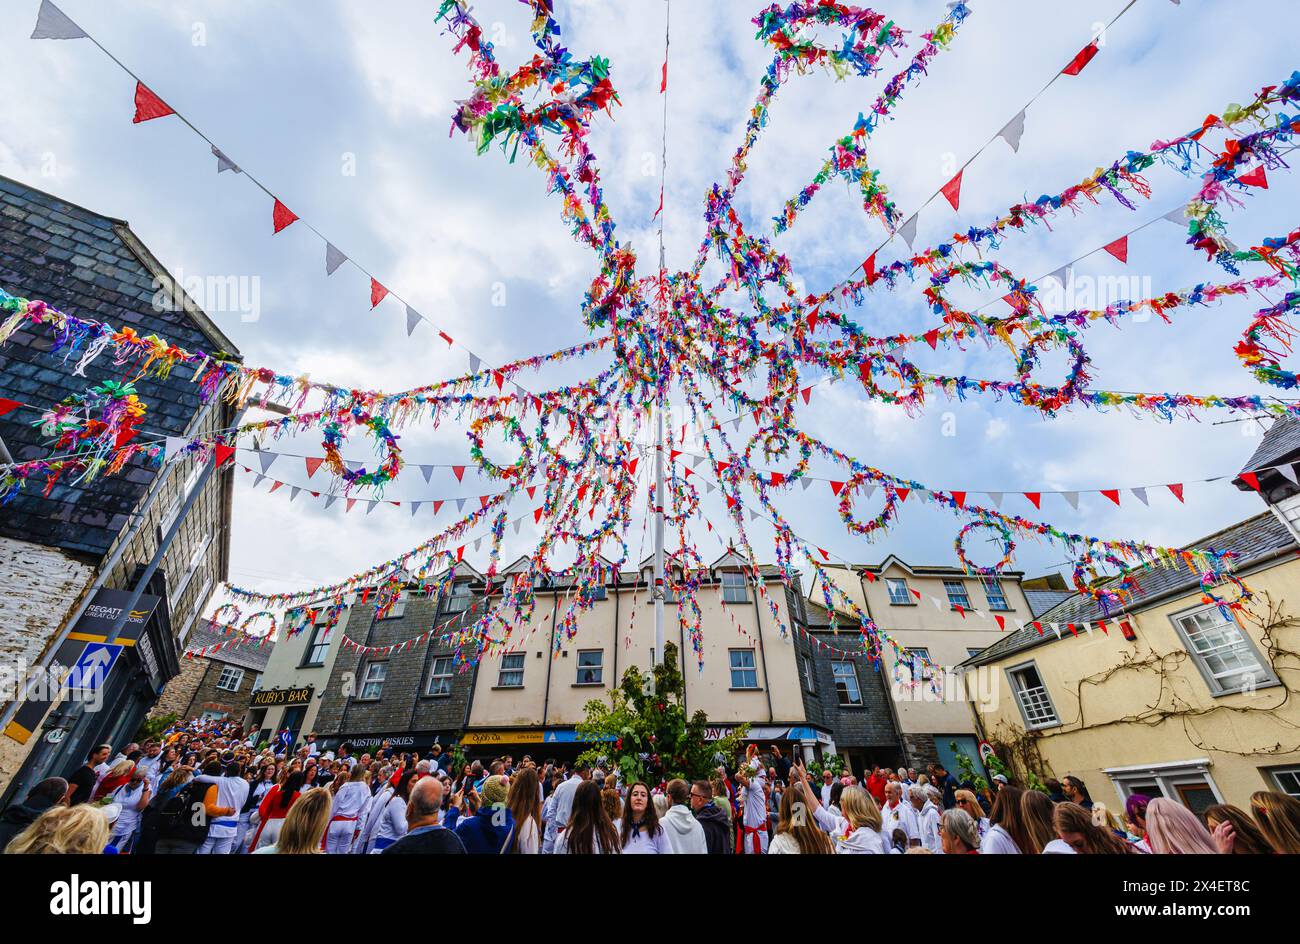 Unter der farbenfrohen Maische versammeln sich Menschenmassen zum „Obby Oss Festival“, einem traditionellen Volksfest am Maitag in Padstow, Cornwall, England Stockfoto